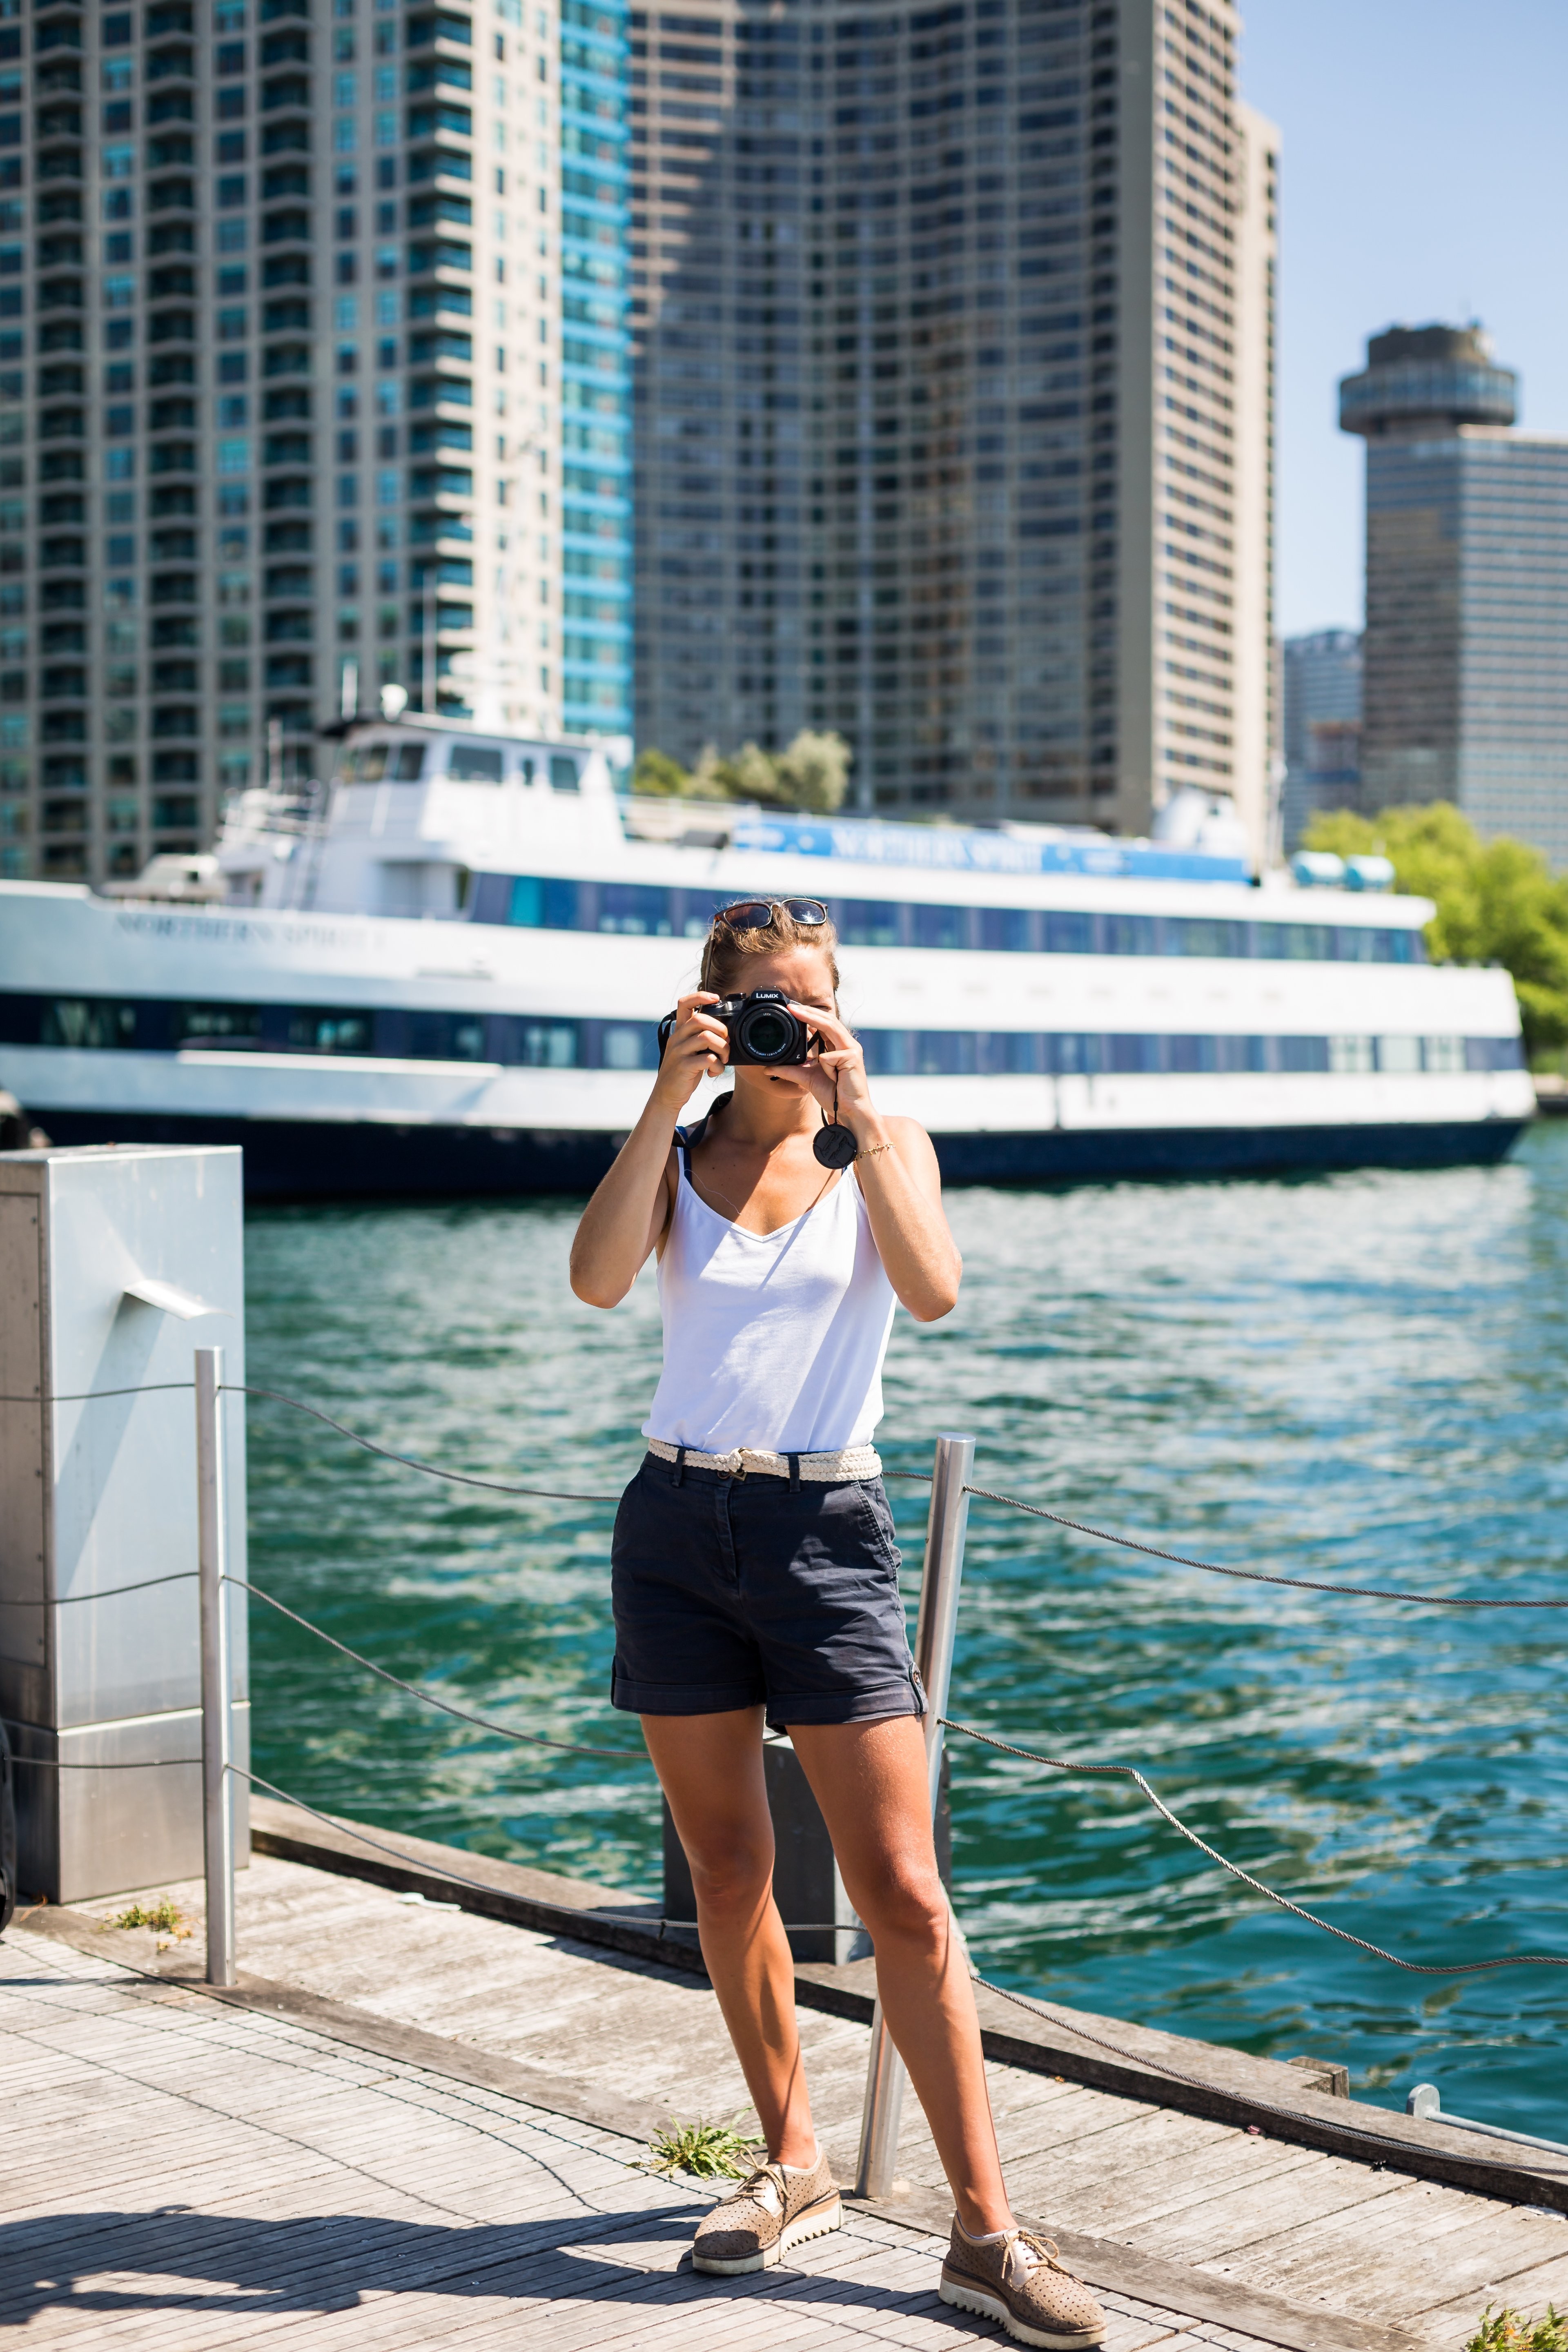 La persona se para frente al mar y sostiene la cámara para tomar una foto 